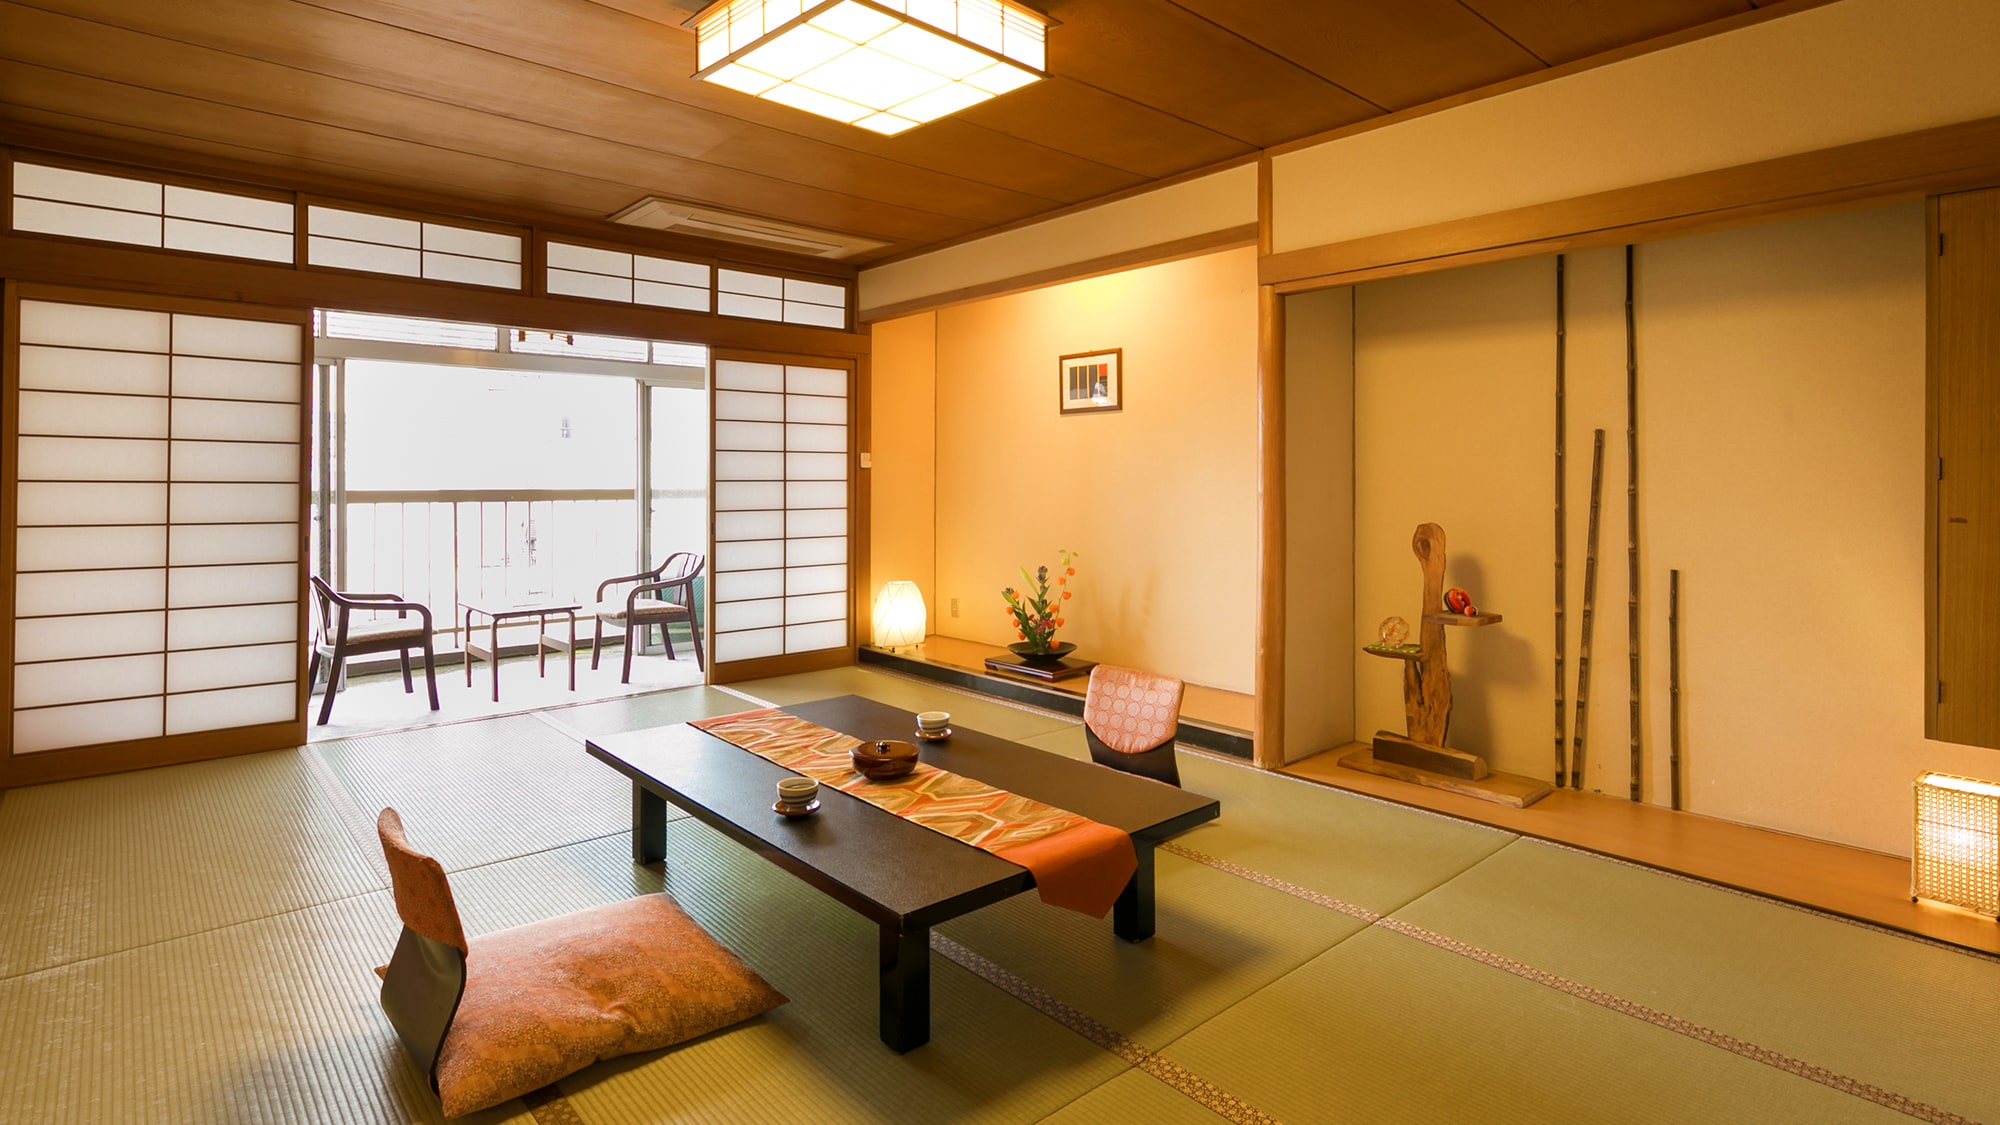 ■日式房間12張榻榻米■寬敞寬敞的空間讓您睡個好覺♪